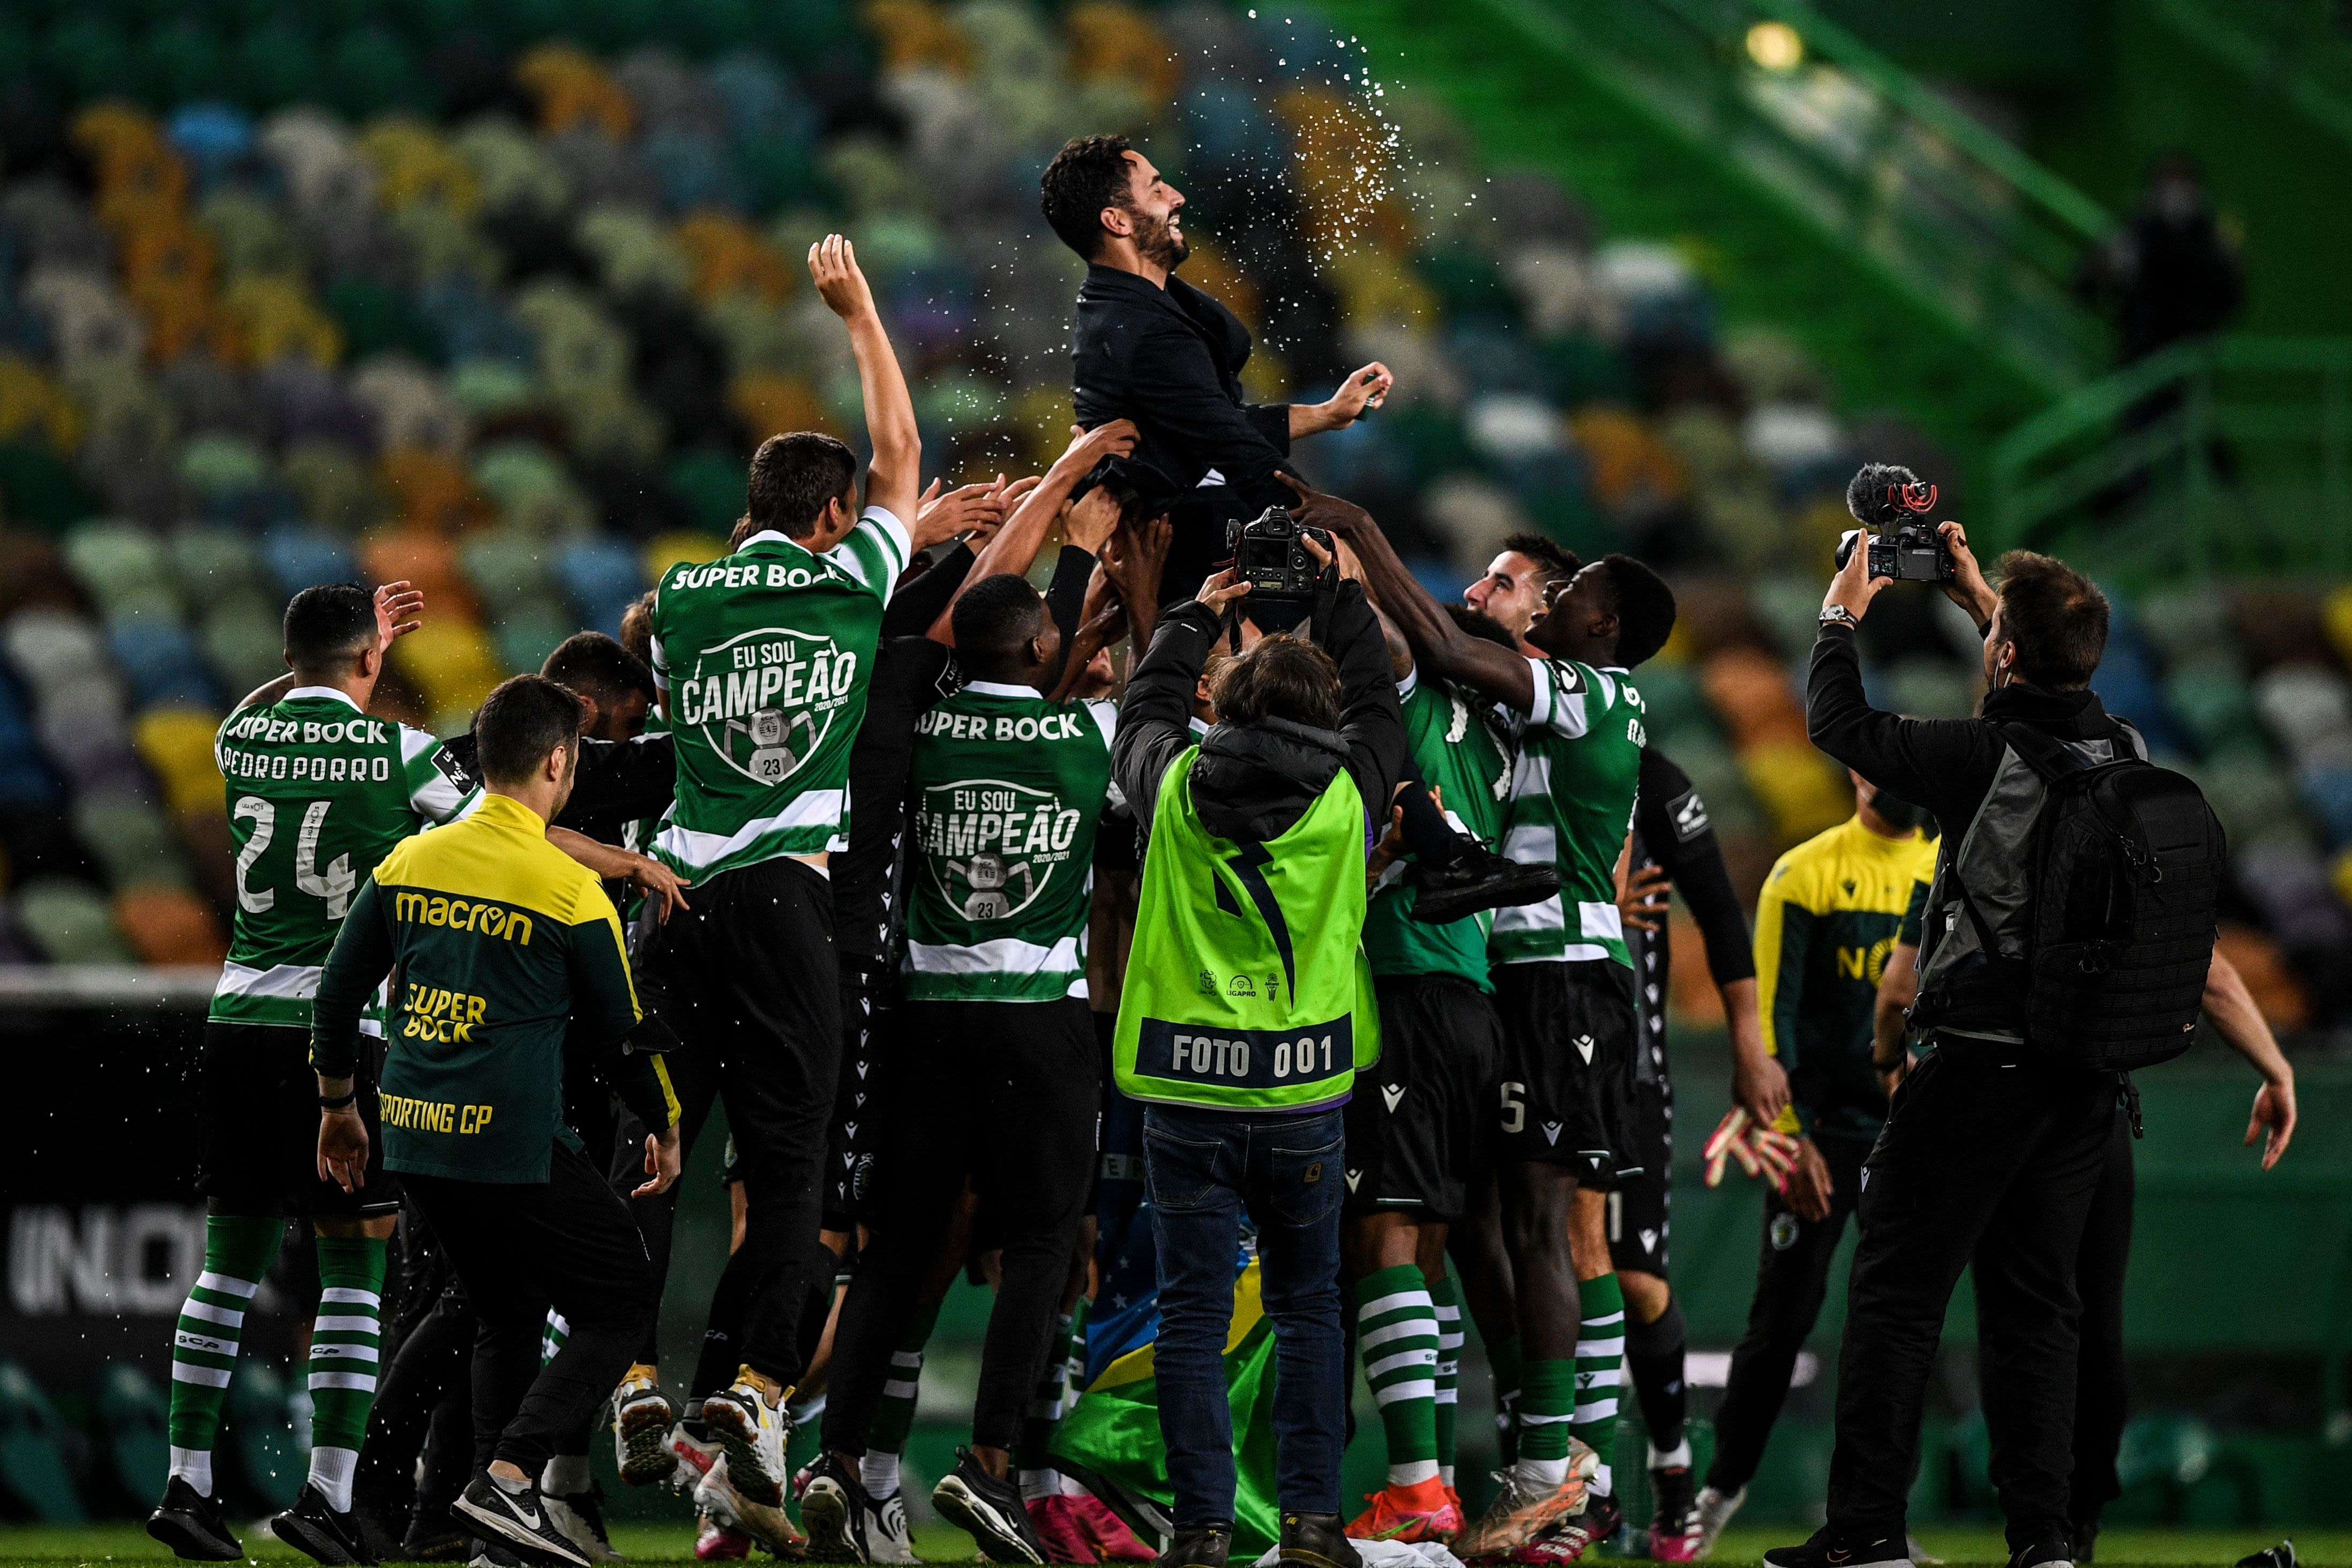 Sporting CP on X: #SportingB  ⏹️ FINAL DO JOGO: Derrota dos